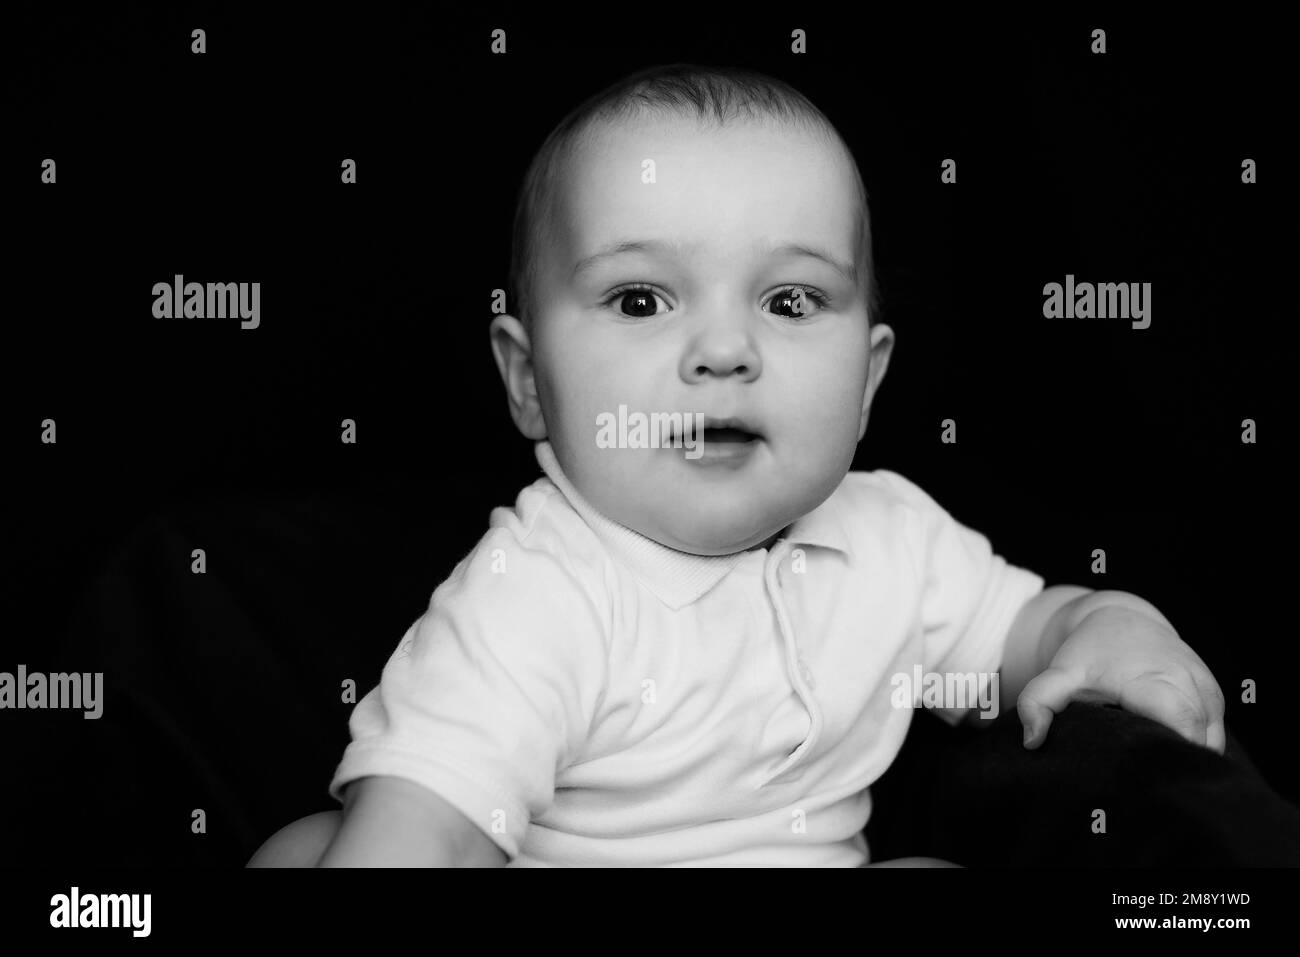 Portrait noir et blanc de drôle petit enfant mignon. Bébé caucasien regardant l'appareil photo Banque D'Images